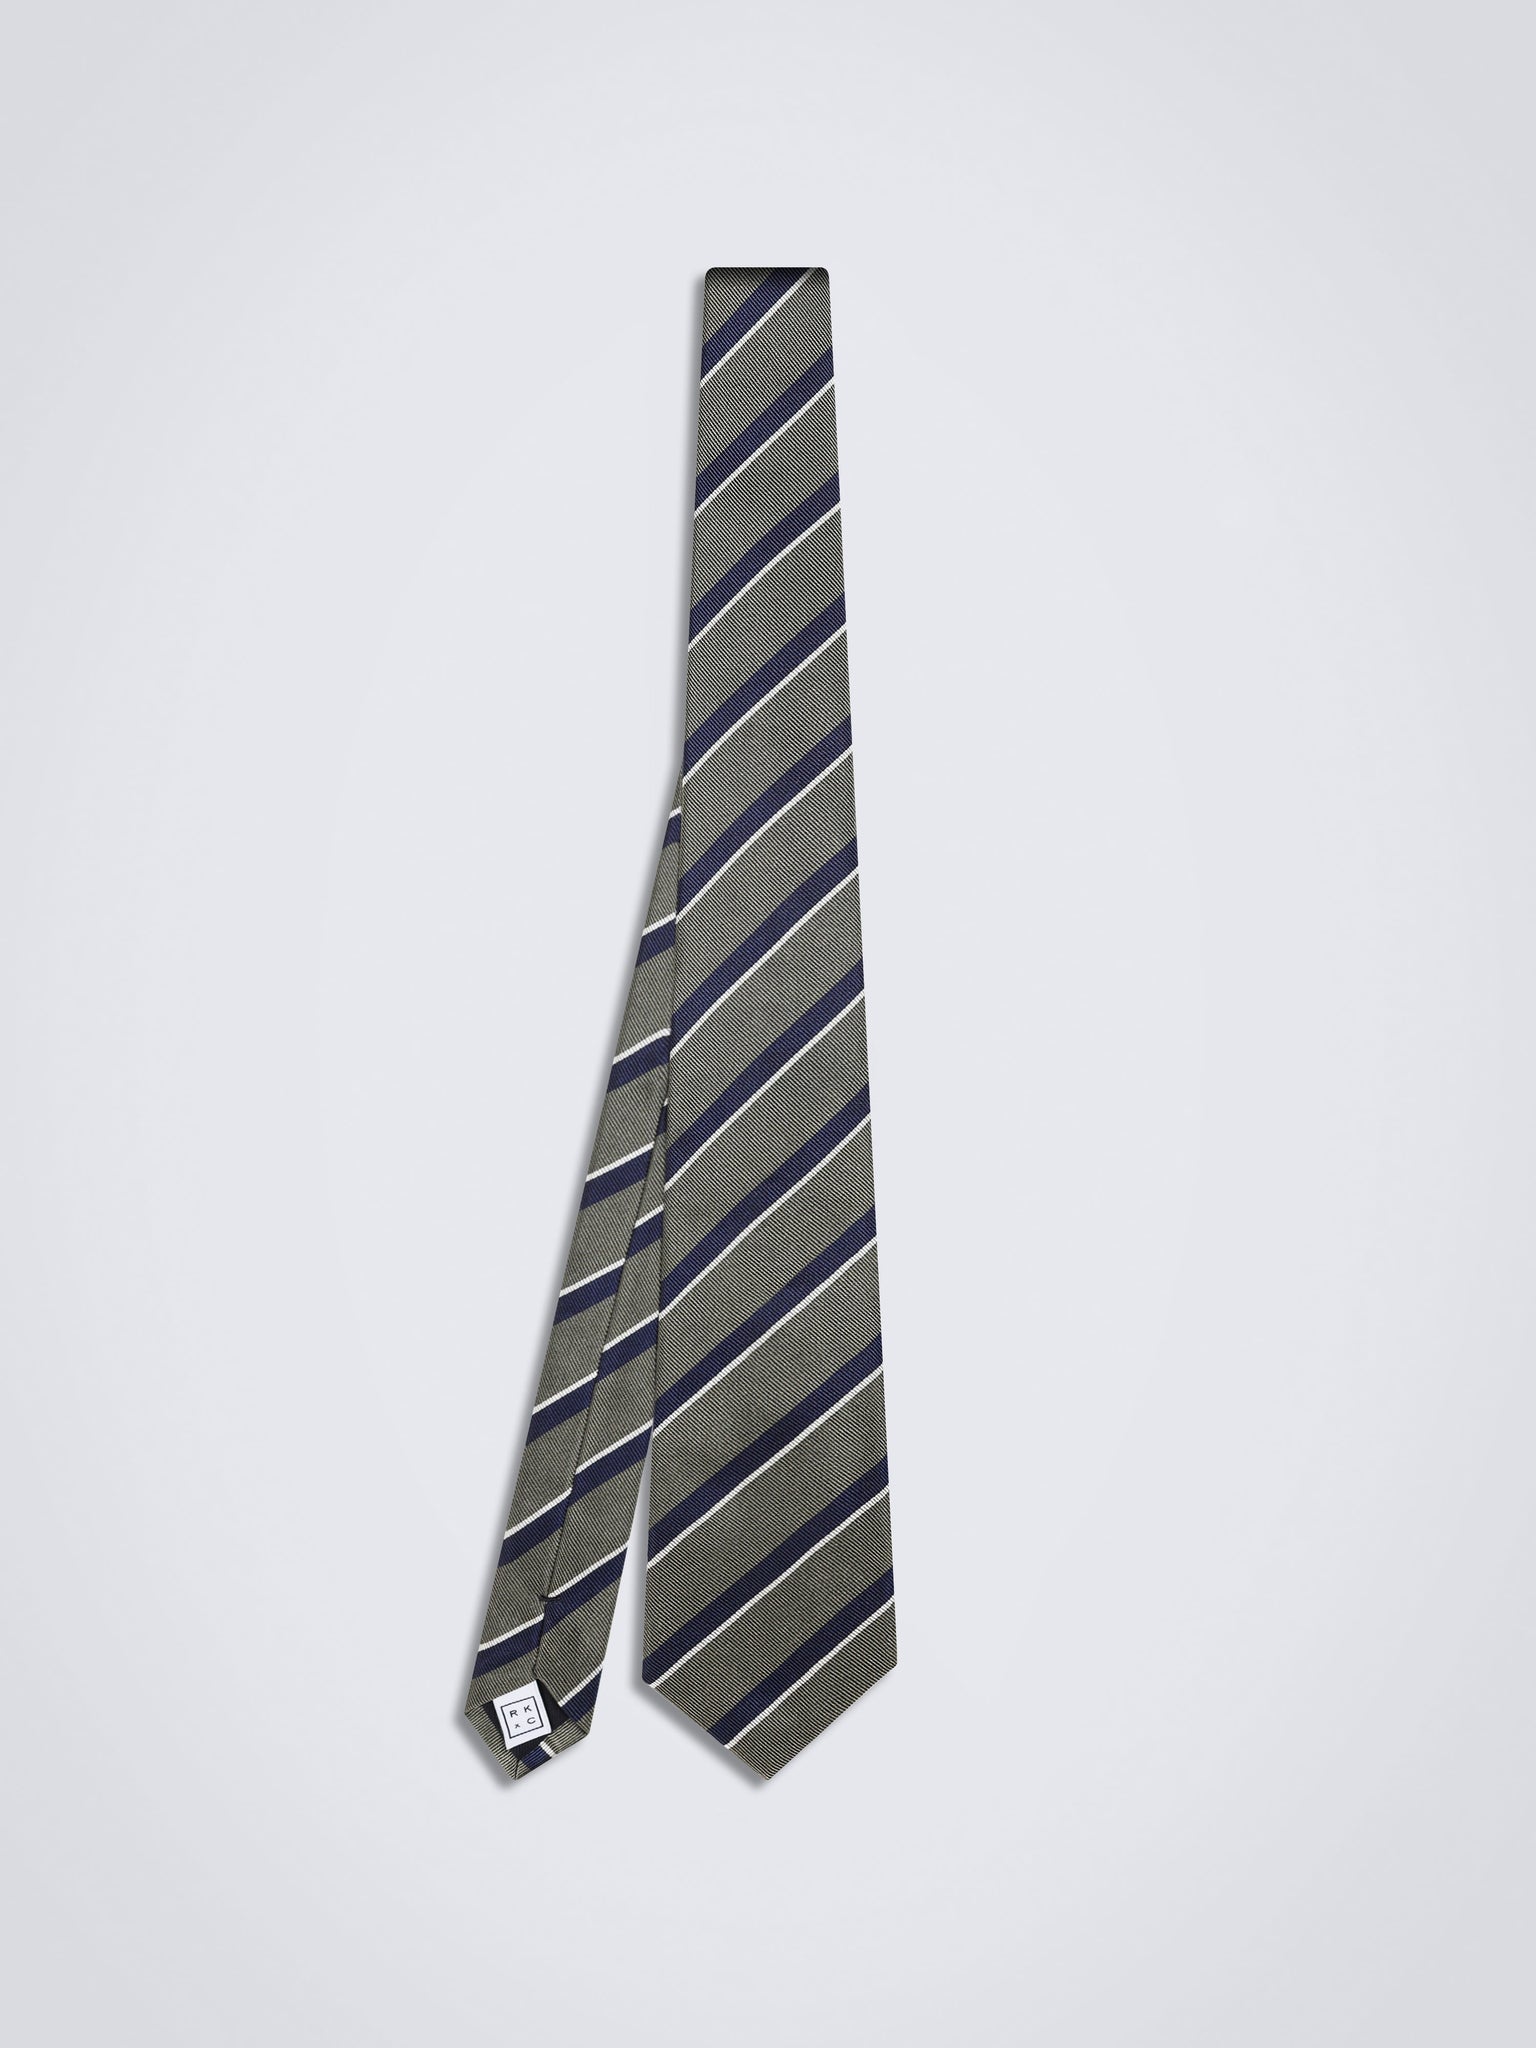 Chokore Repp Tie (Olive) Necktie